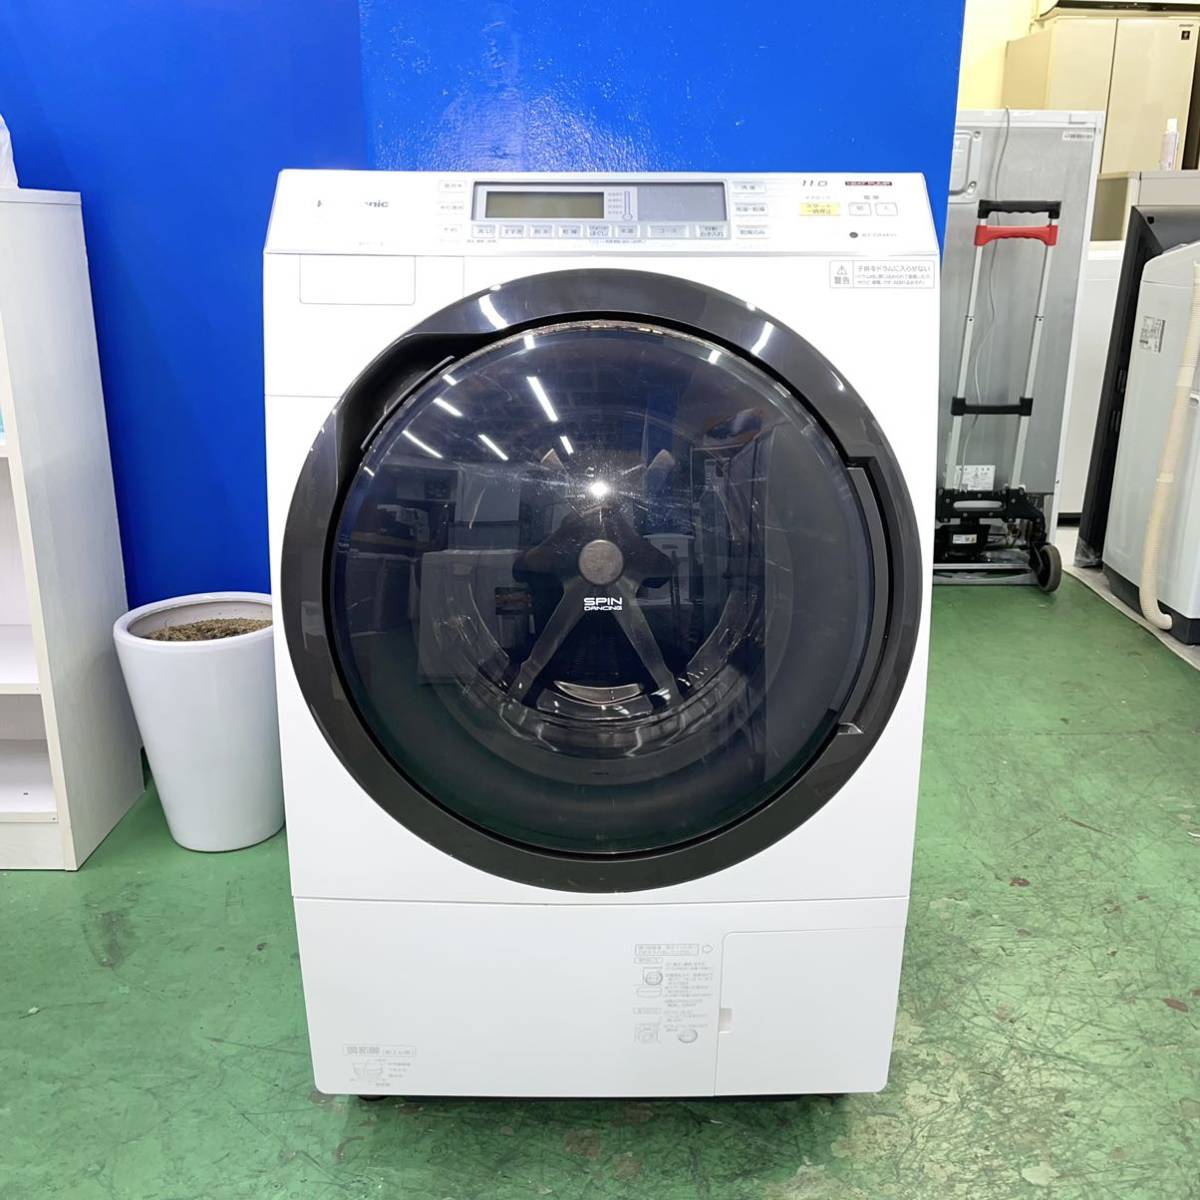 ⭐️HITACHI⭐️ドラム式洗濯乾燥機 2015年 11kg 大阪市近郊配送無料 